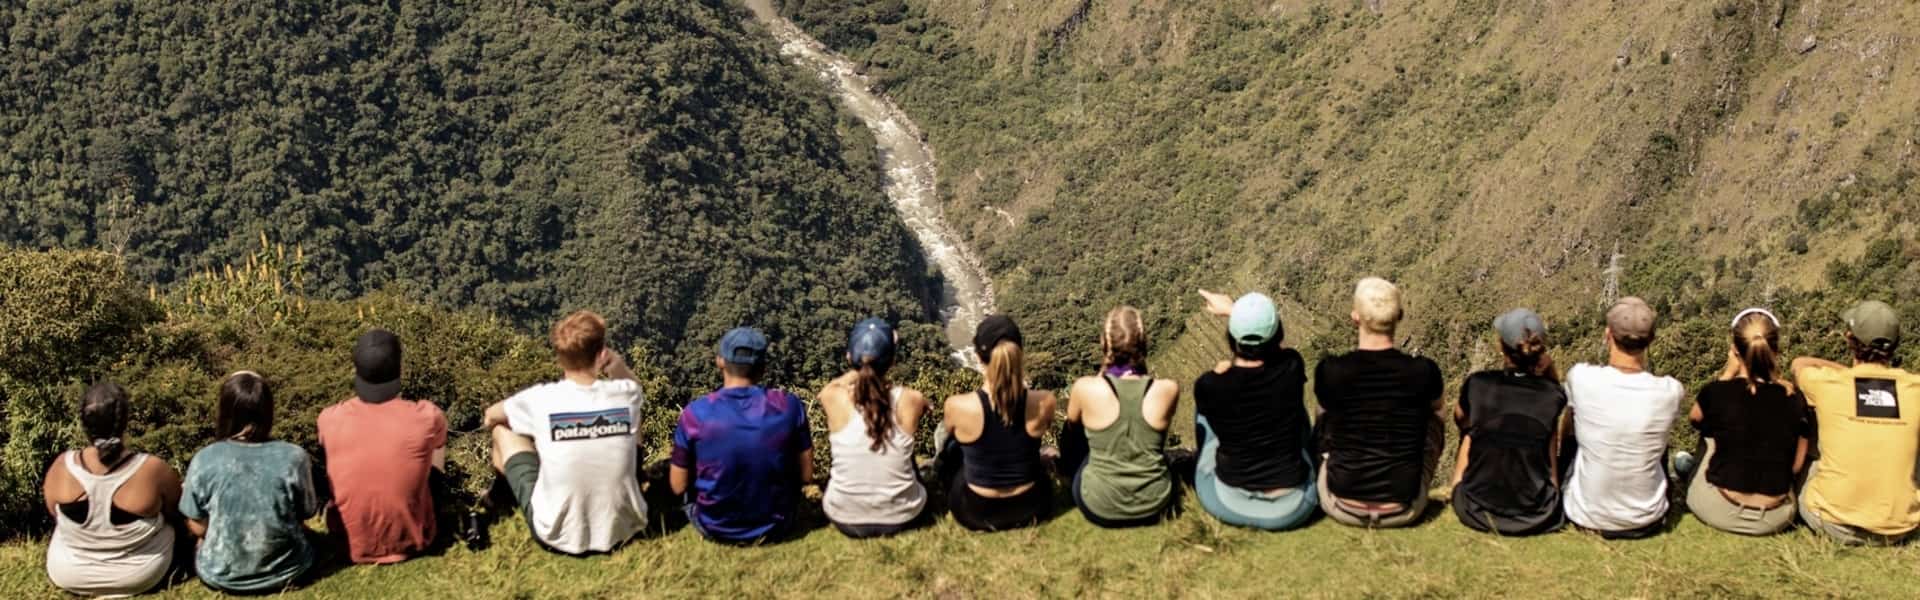 Inca trail tour | Ultimate Trekking